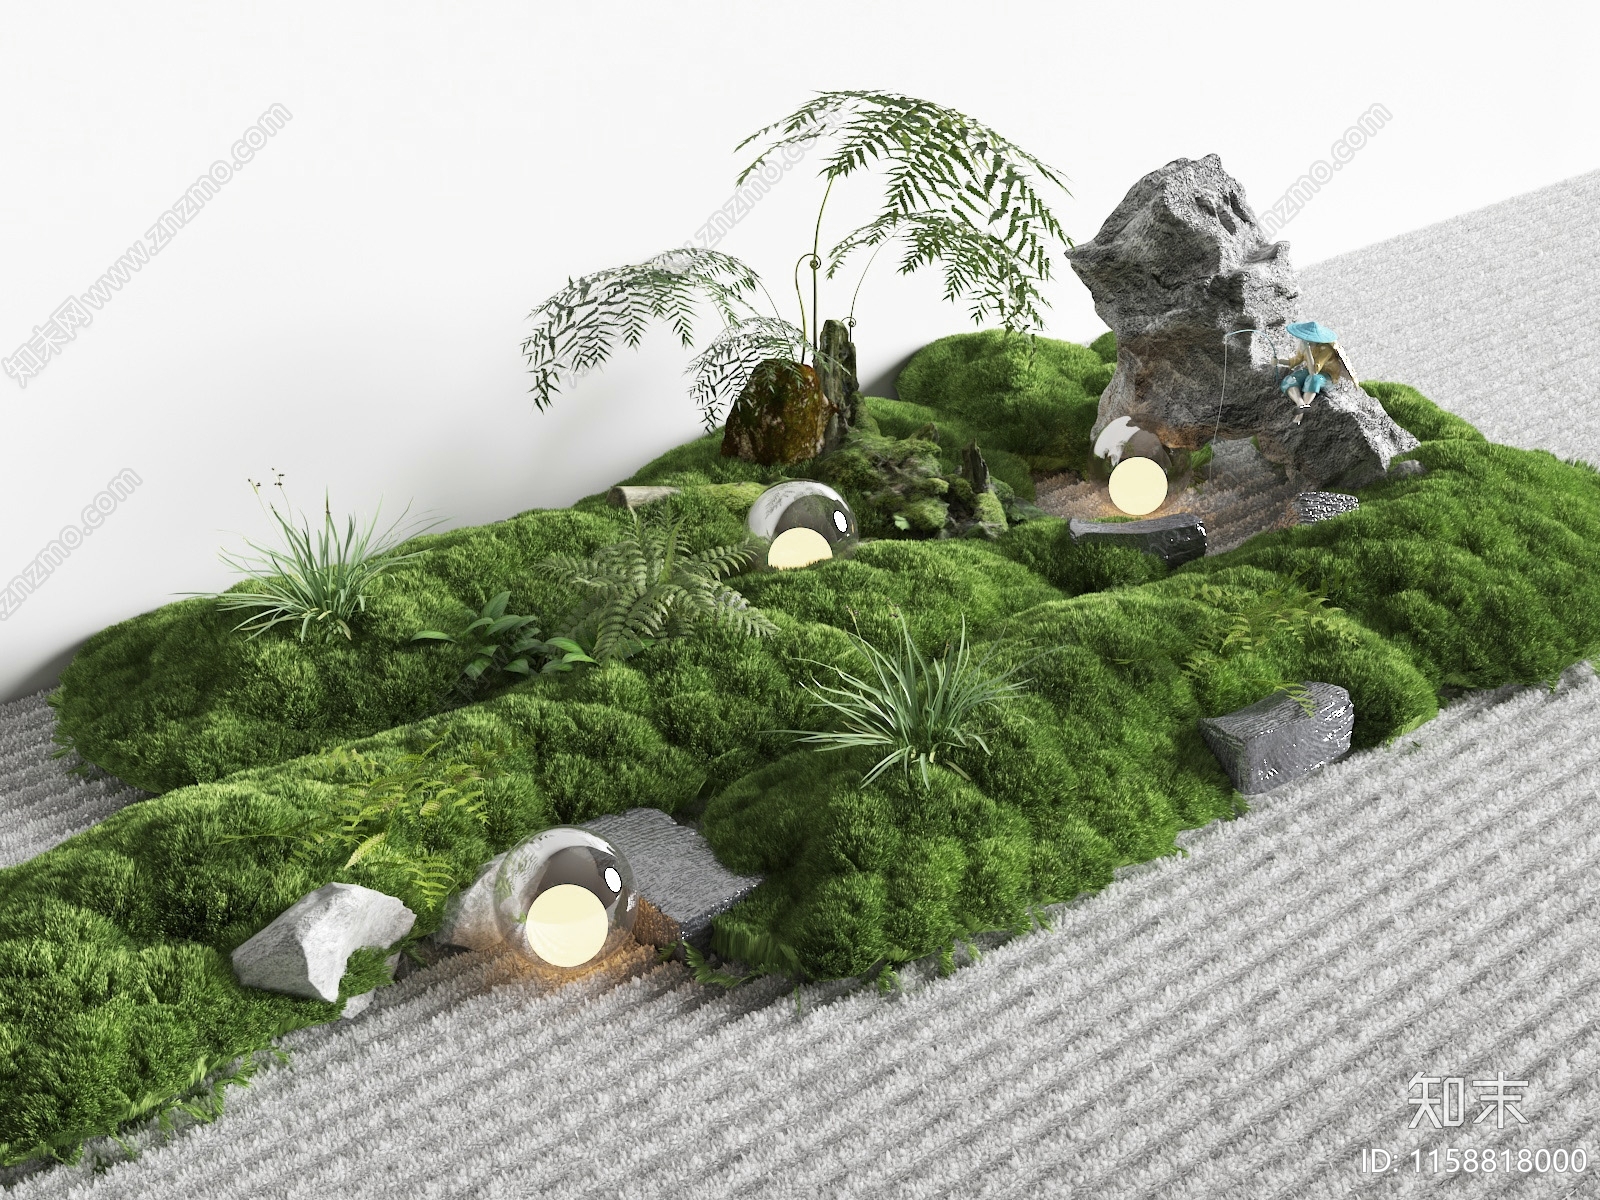 现代景观苔藓3D模型下载【ID:1158818000】